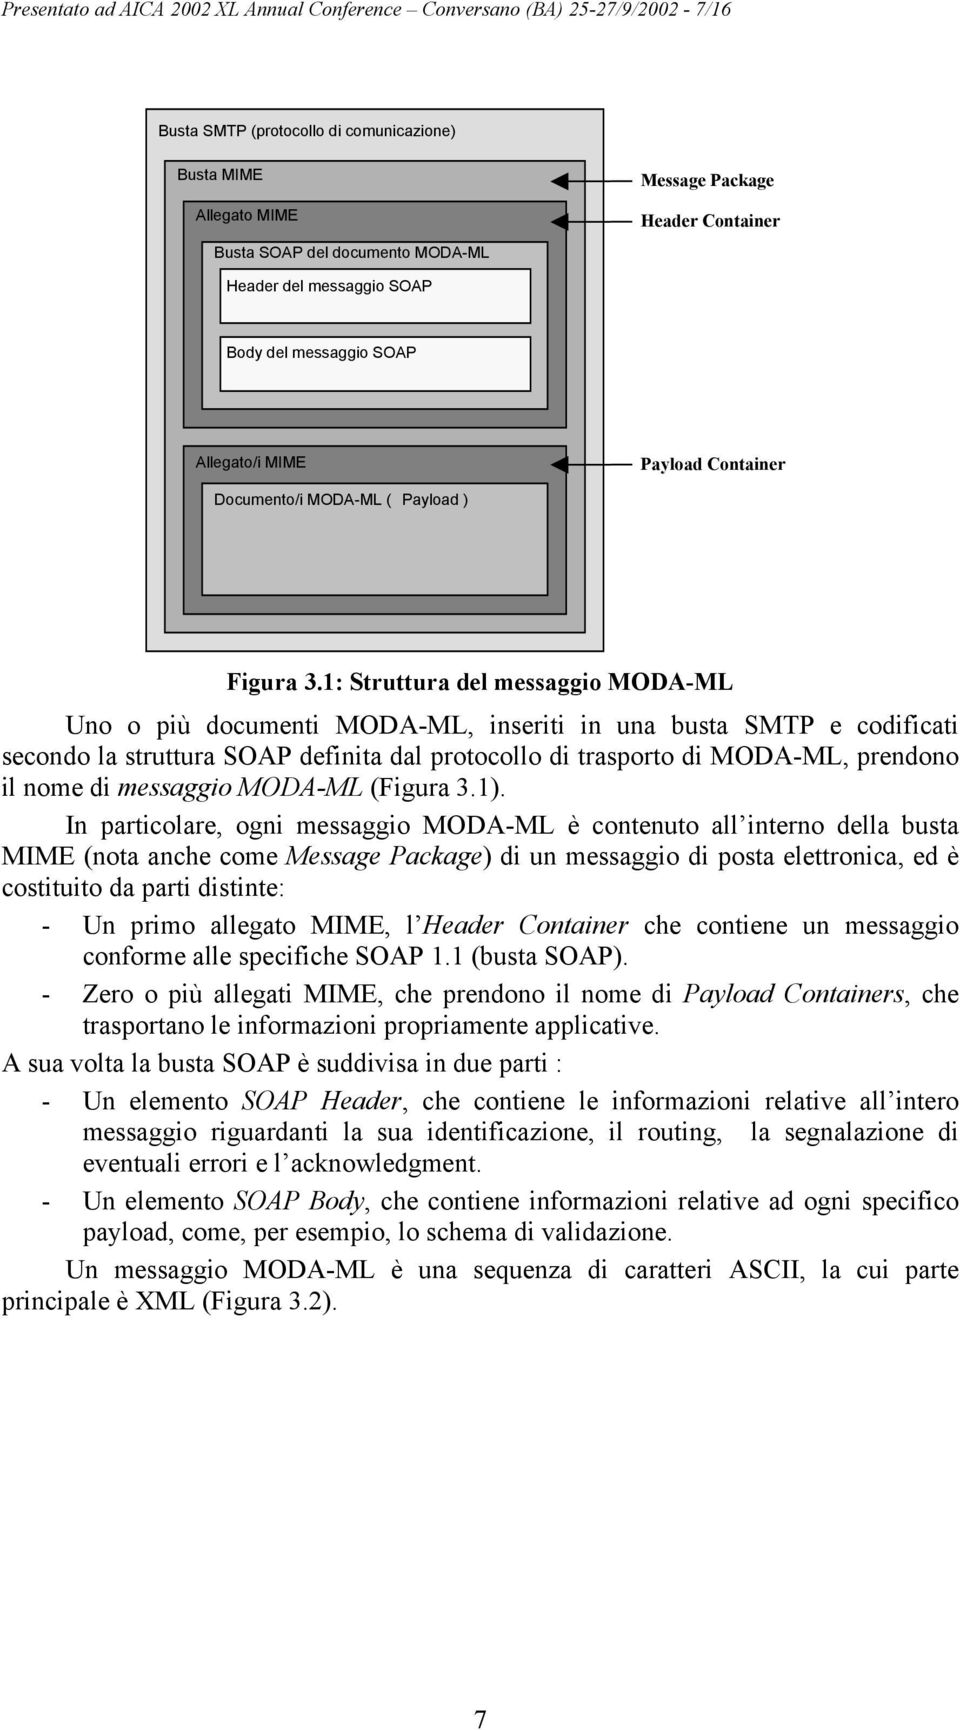 1: Struttura del messaggio MODA-ML Uno o più documenti MODA-ML, inseriti in una busta SMTP e codificati secondo la struttura SOAP definita dal protocollo di trasporto di MODA-ML, prendono il nome di